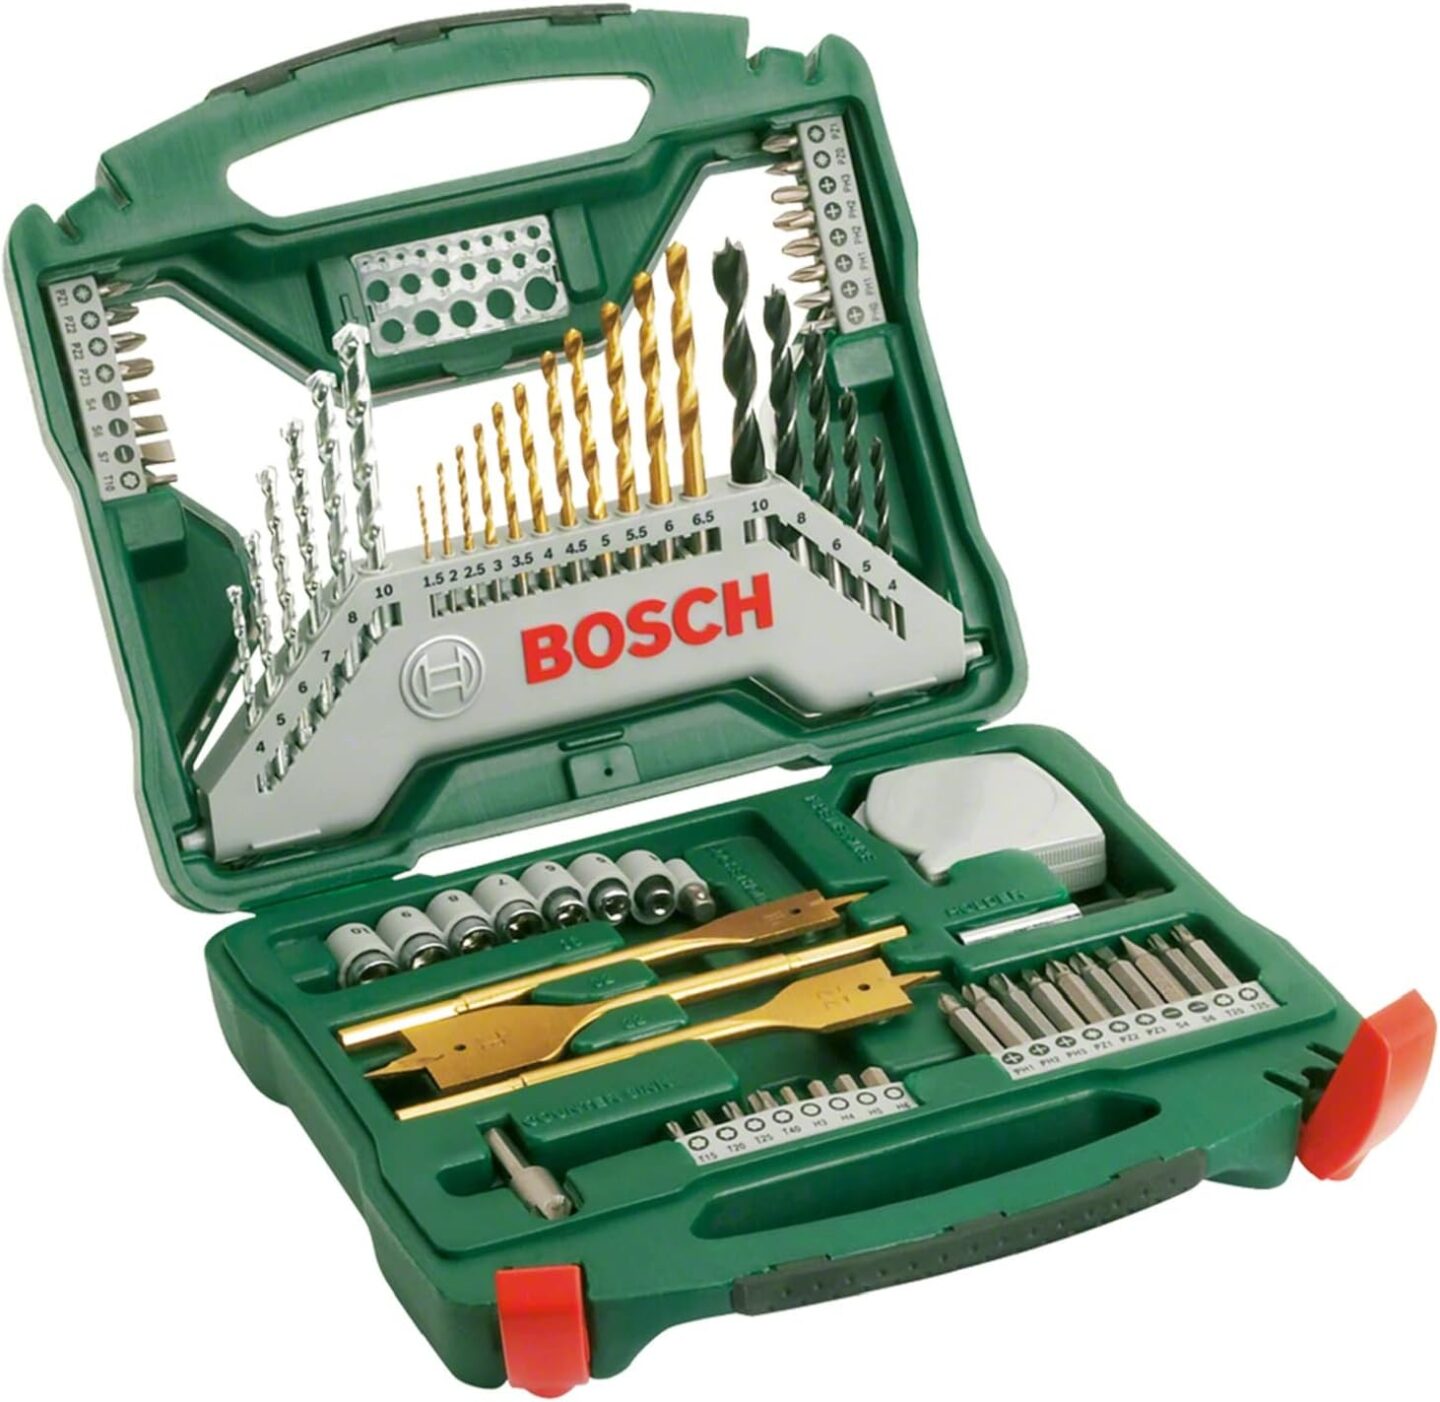 Bosch 70tlg. X-Line Titanium Bohrer und Schrauber Set 6